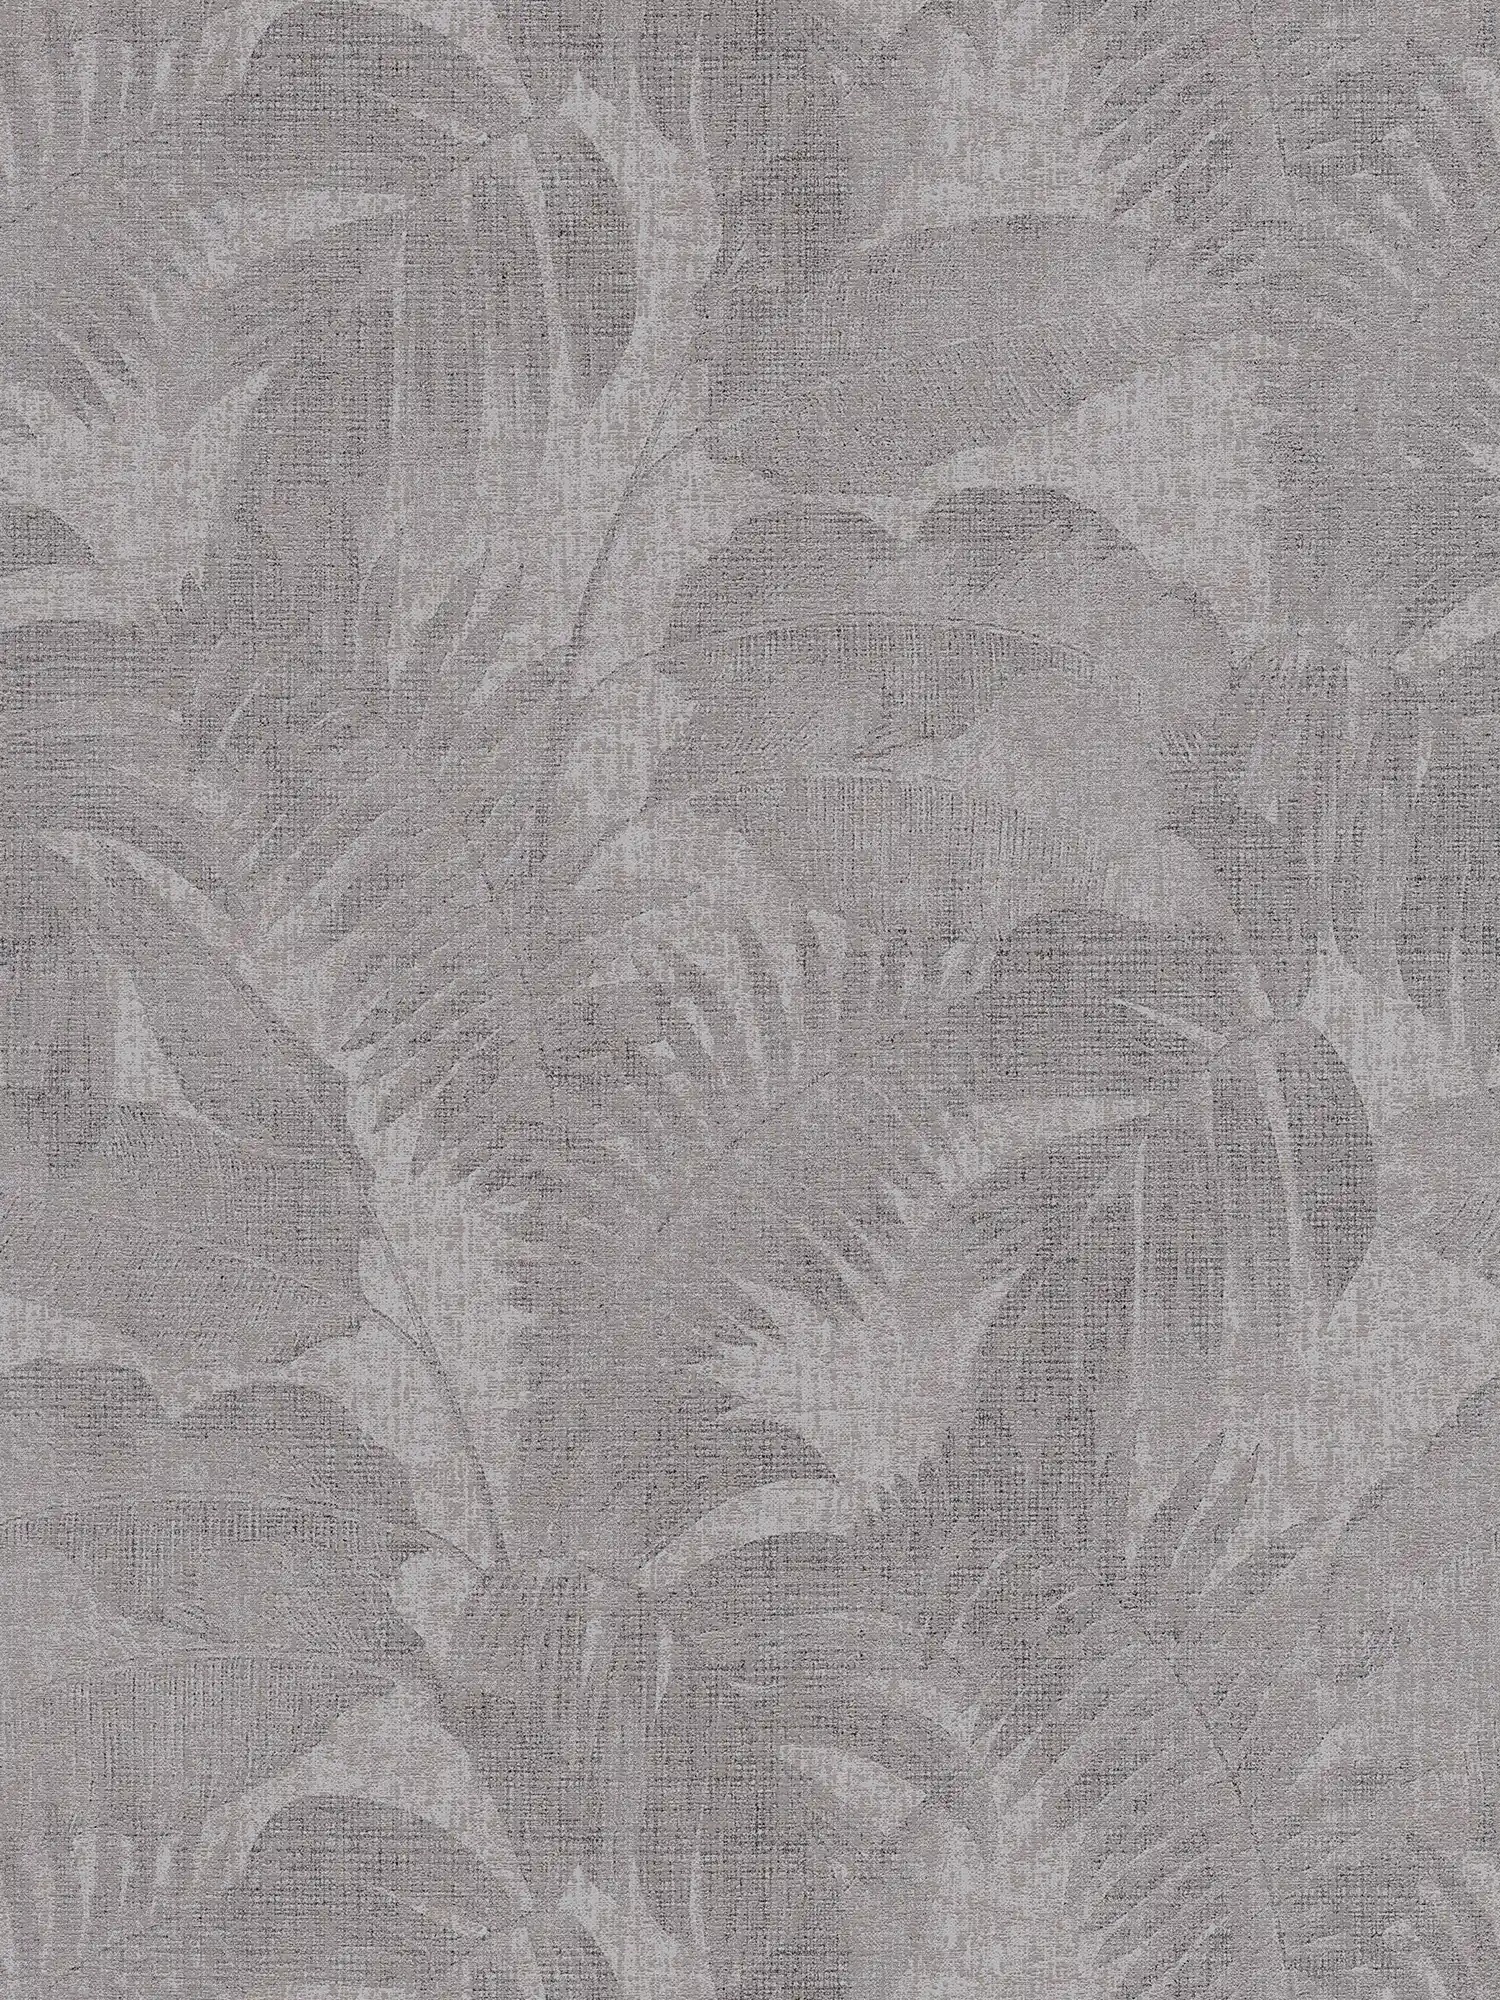 Boho jungle wallpaper with linen look - brown, grey, beige
